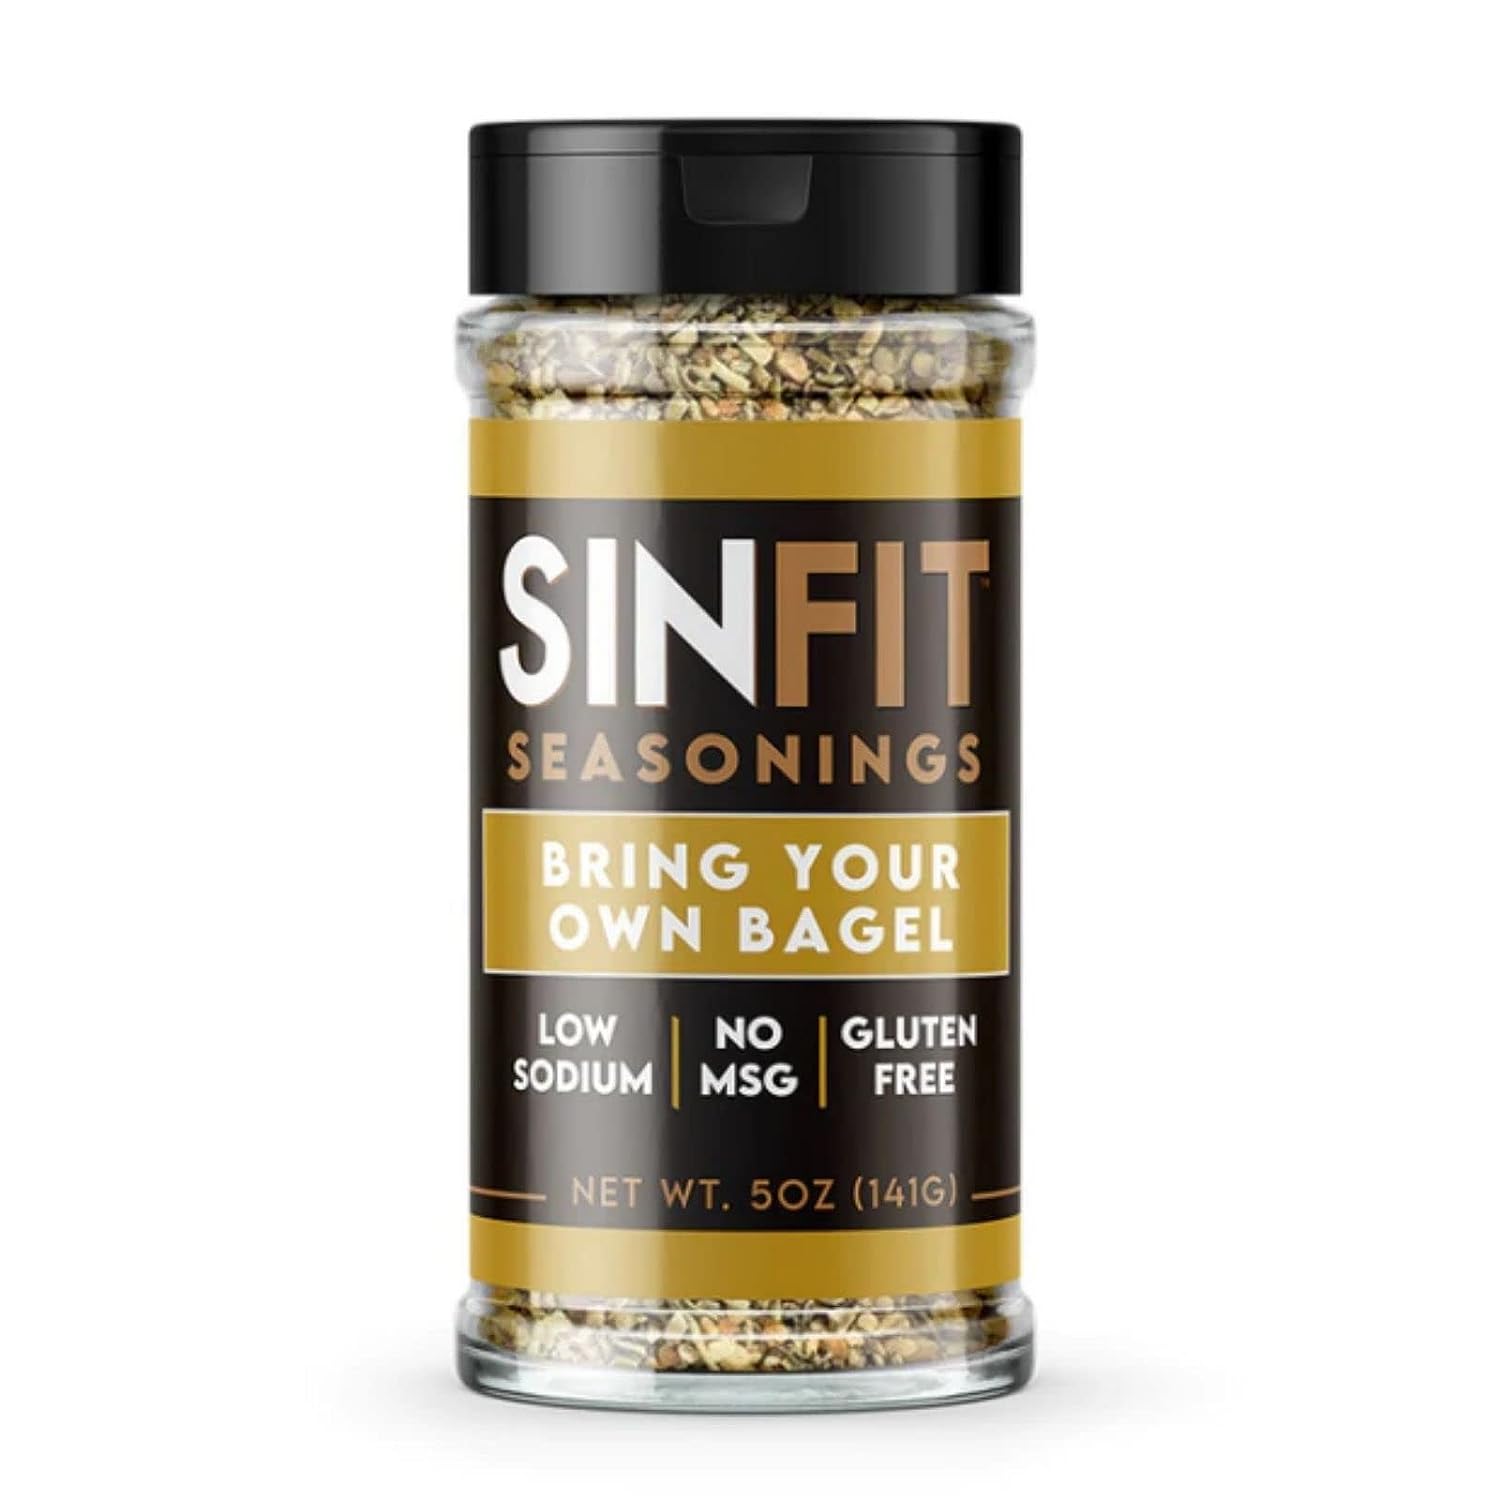 Sinfit Nutrition Seasonings sinfit-seasonings Protein Snacks Bring Your Own Bagel Sinfit Nutrition